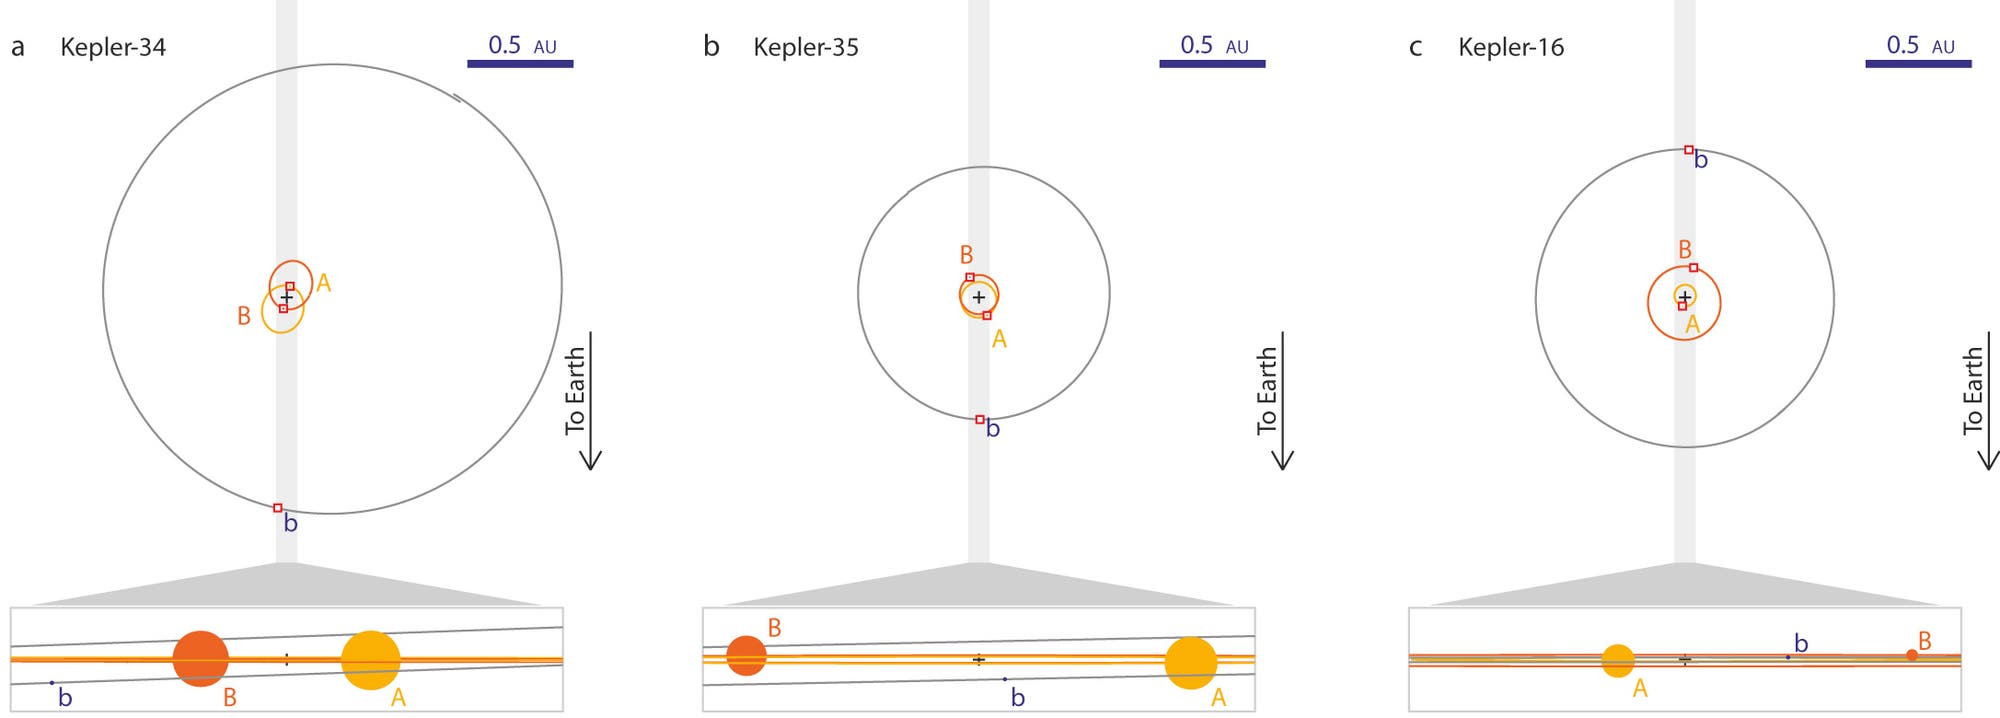 Die Exoplanetensysteme Kepler-34, -35 und -16 im Vergleich